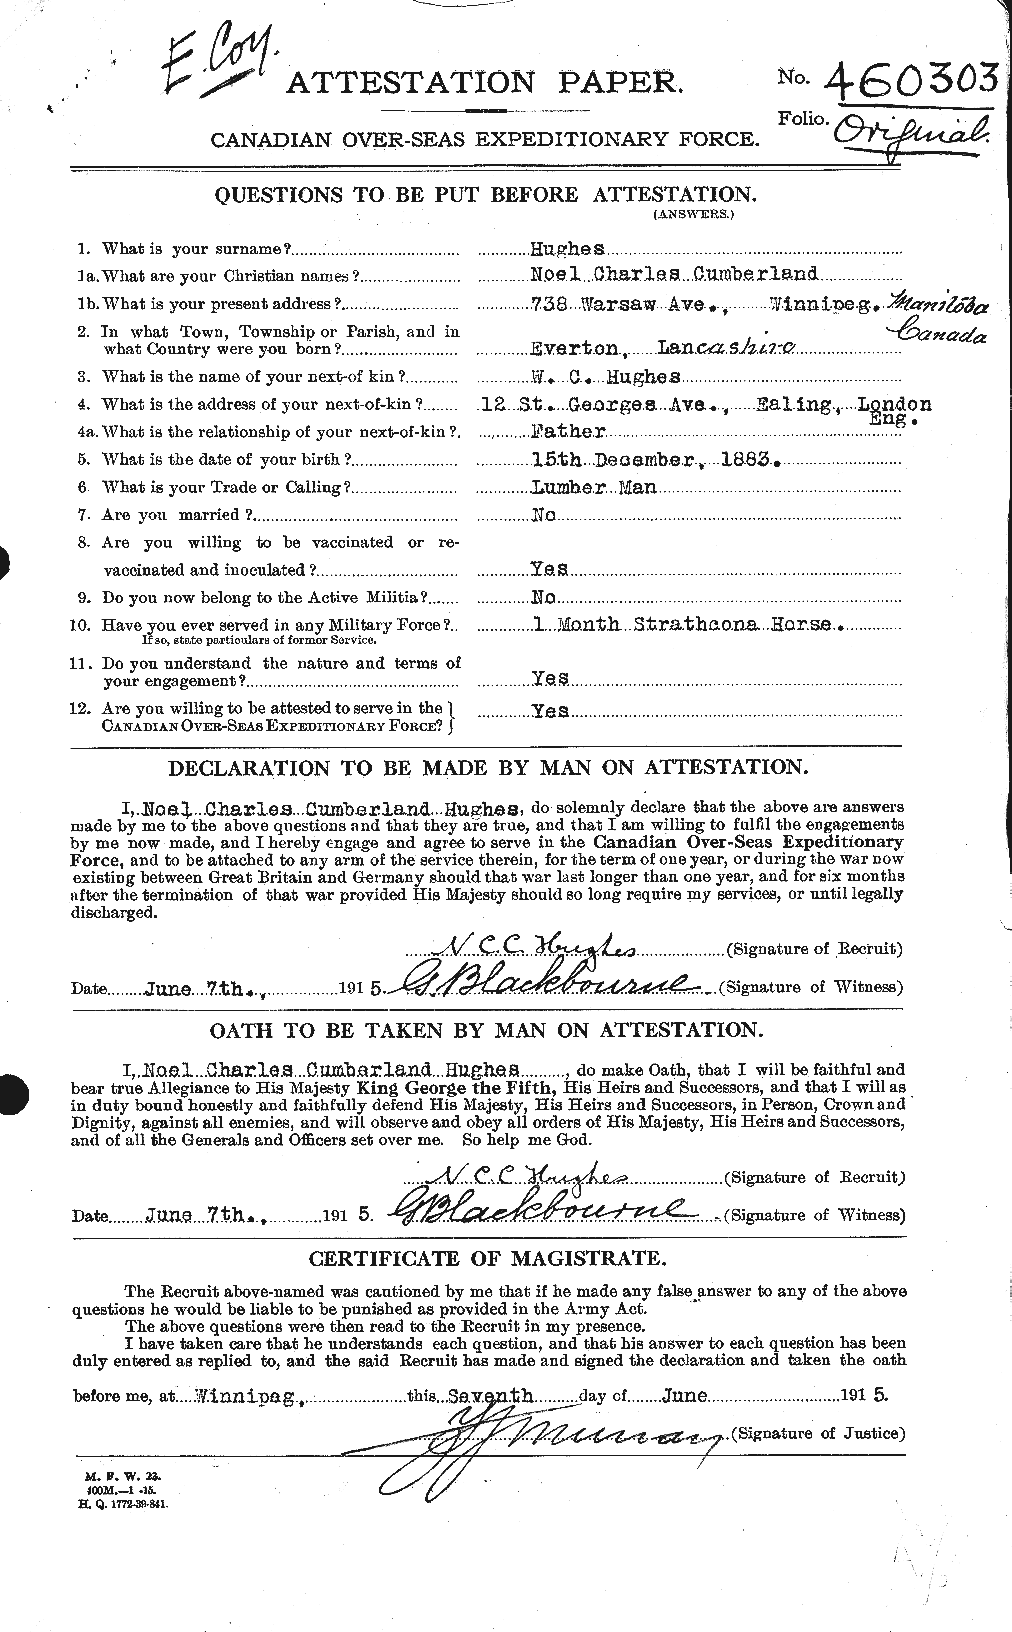 Dossiers du Personnel de la Première Guerre mondiale - CEC 404129a